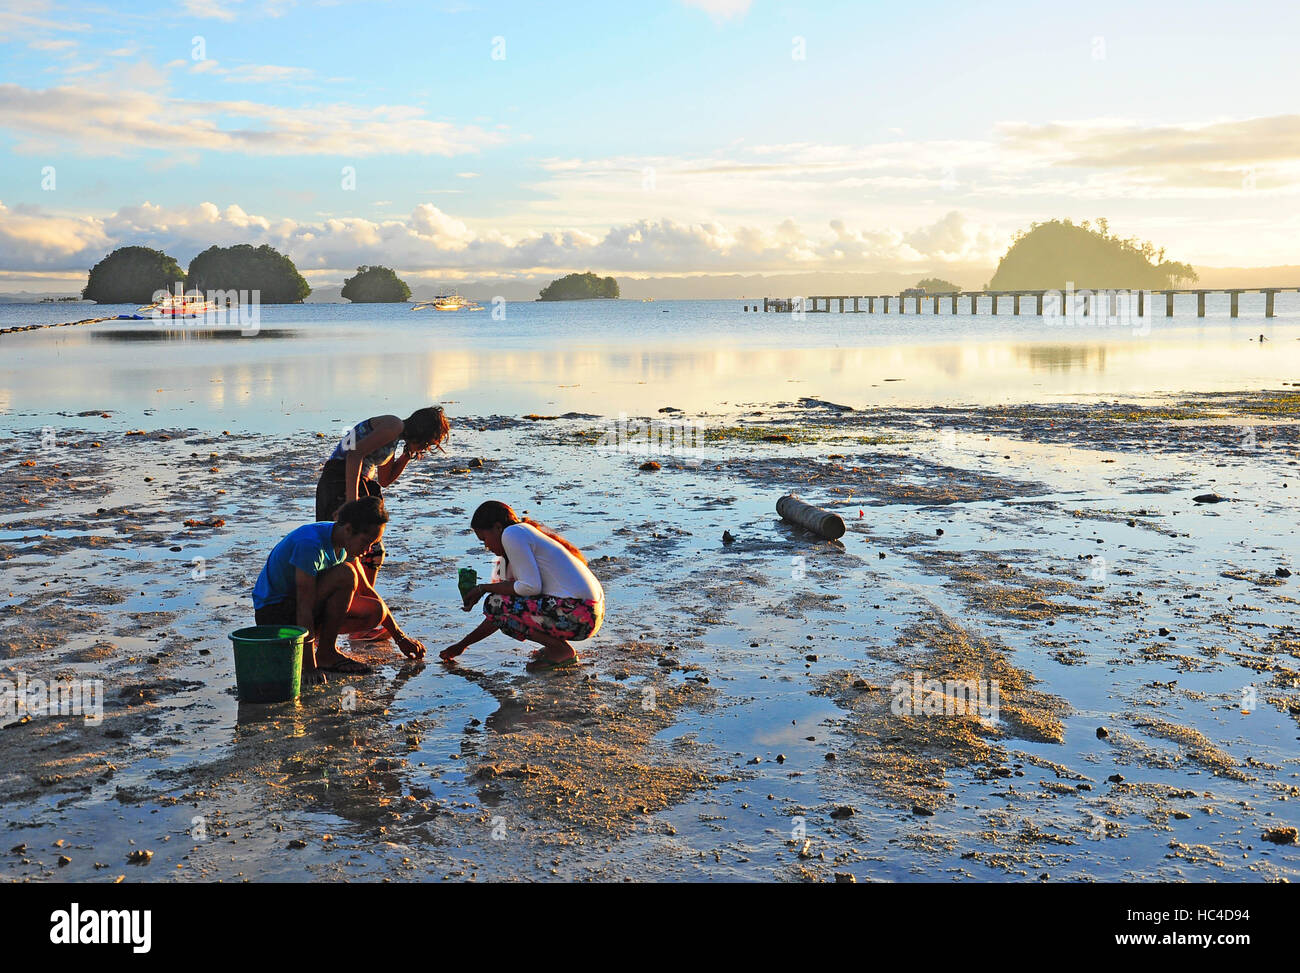 Los lugareños recogiendo conchas y cangrejos en la playa en Britania grupo de islas, en Surigao del Sur, Filipinas. Foto de stock